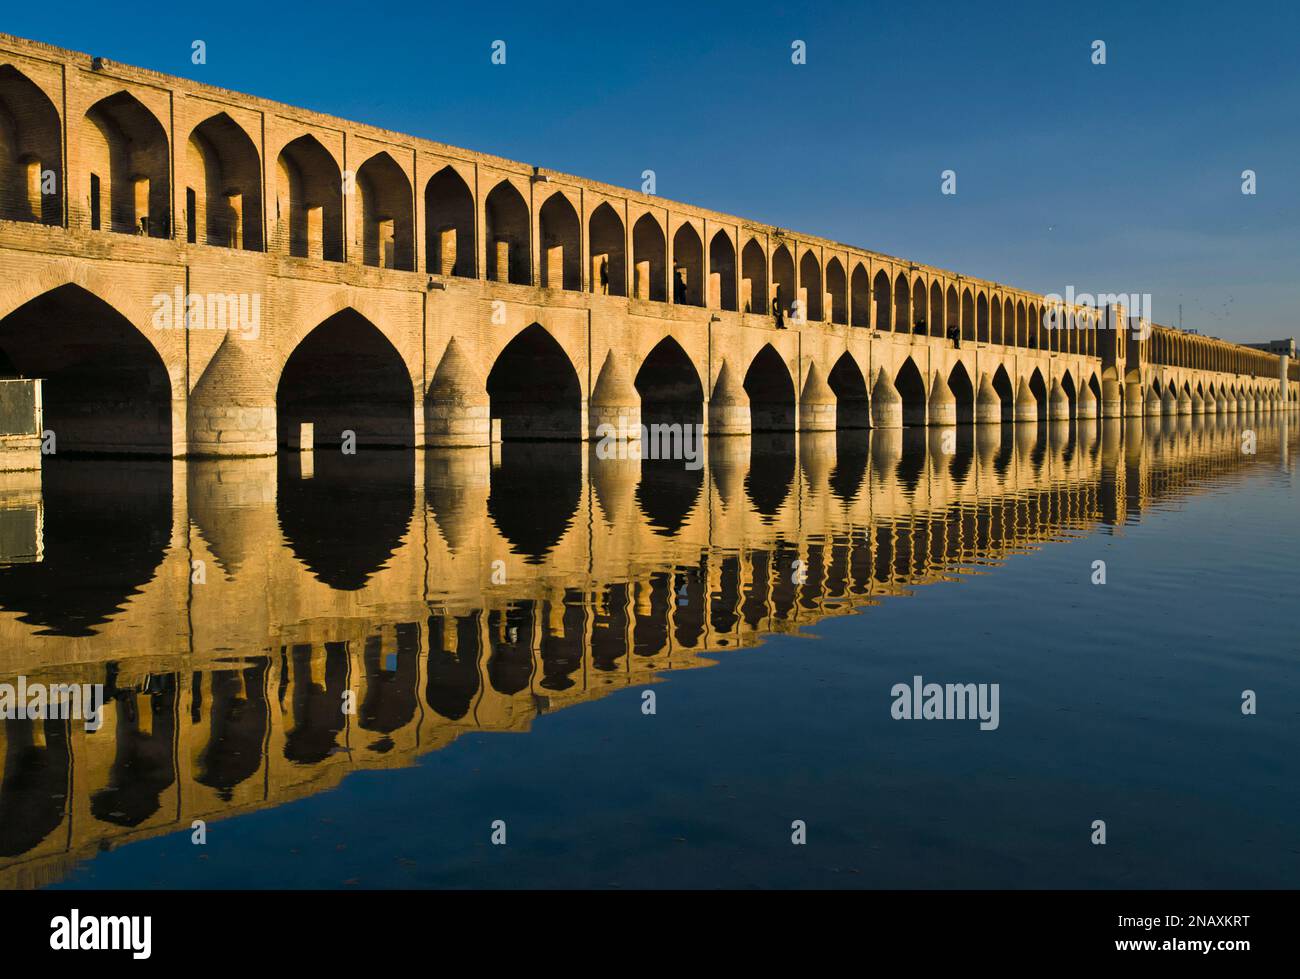 Si-o-se Pol ou Allahverdi Khan Bridge est l'un des ponts les plus connus et traverse le fleuve Zayanderud dans la ville d'Isfahan, en Iran Banque D'Images